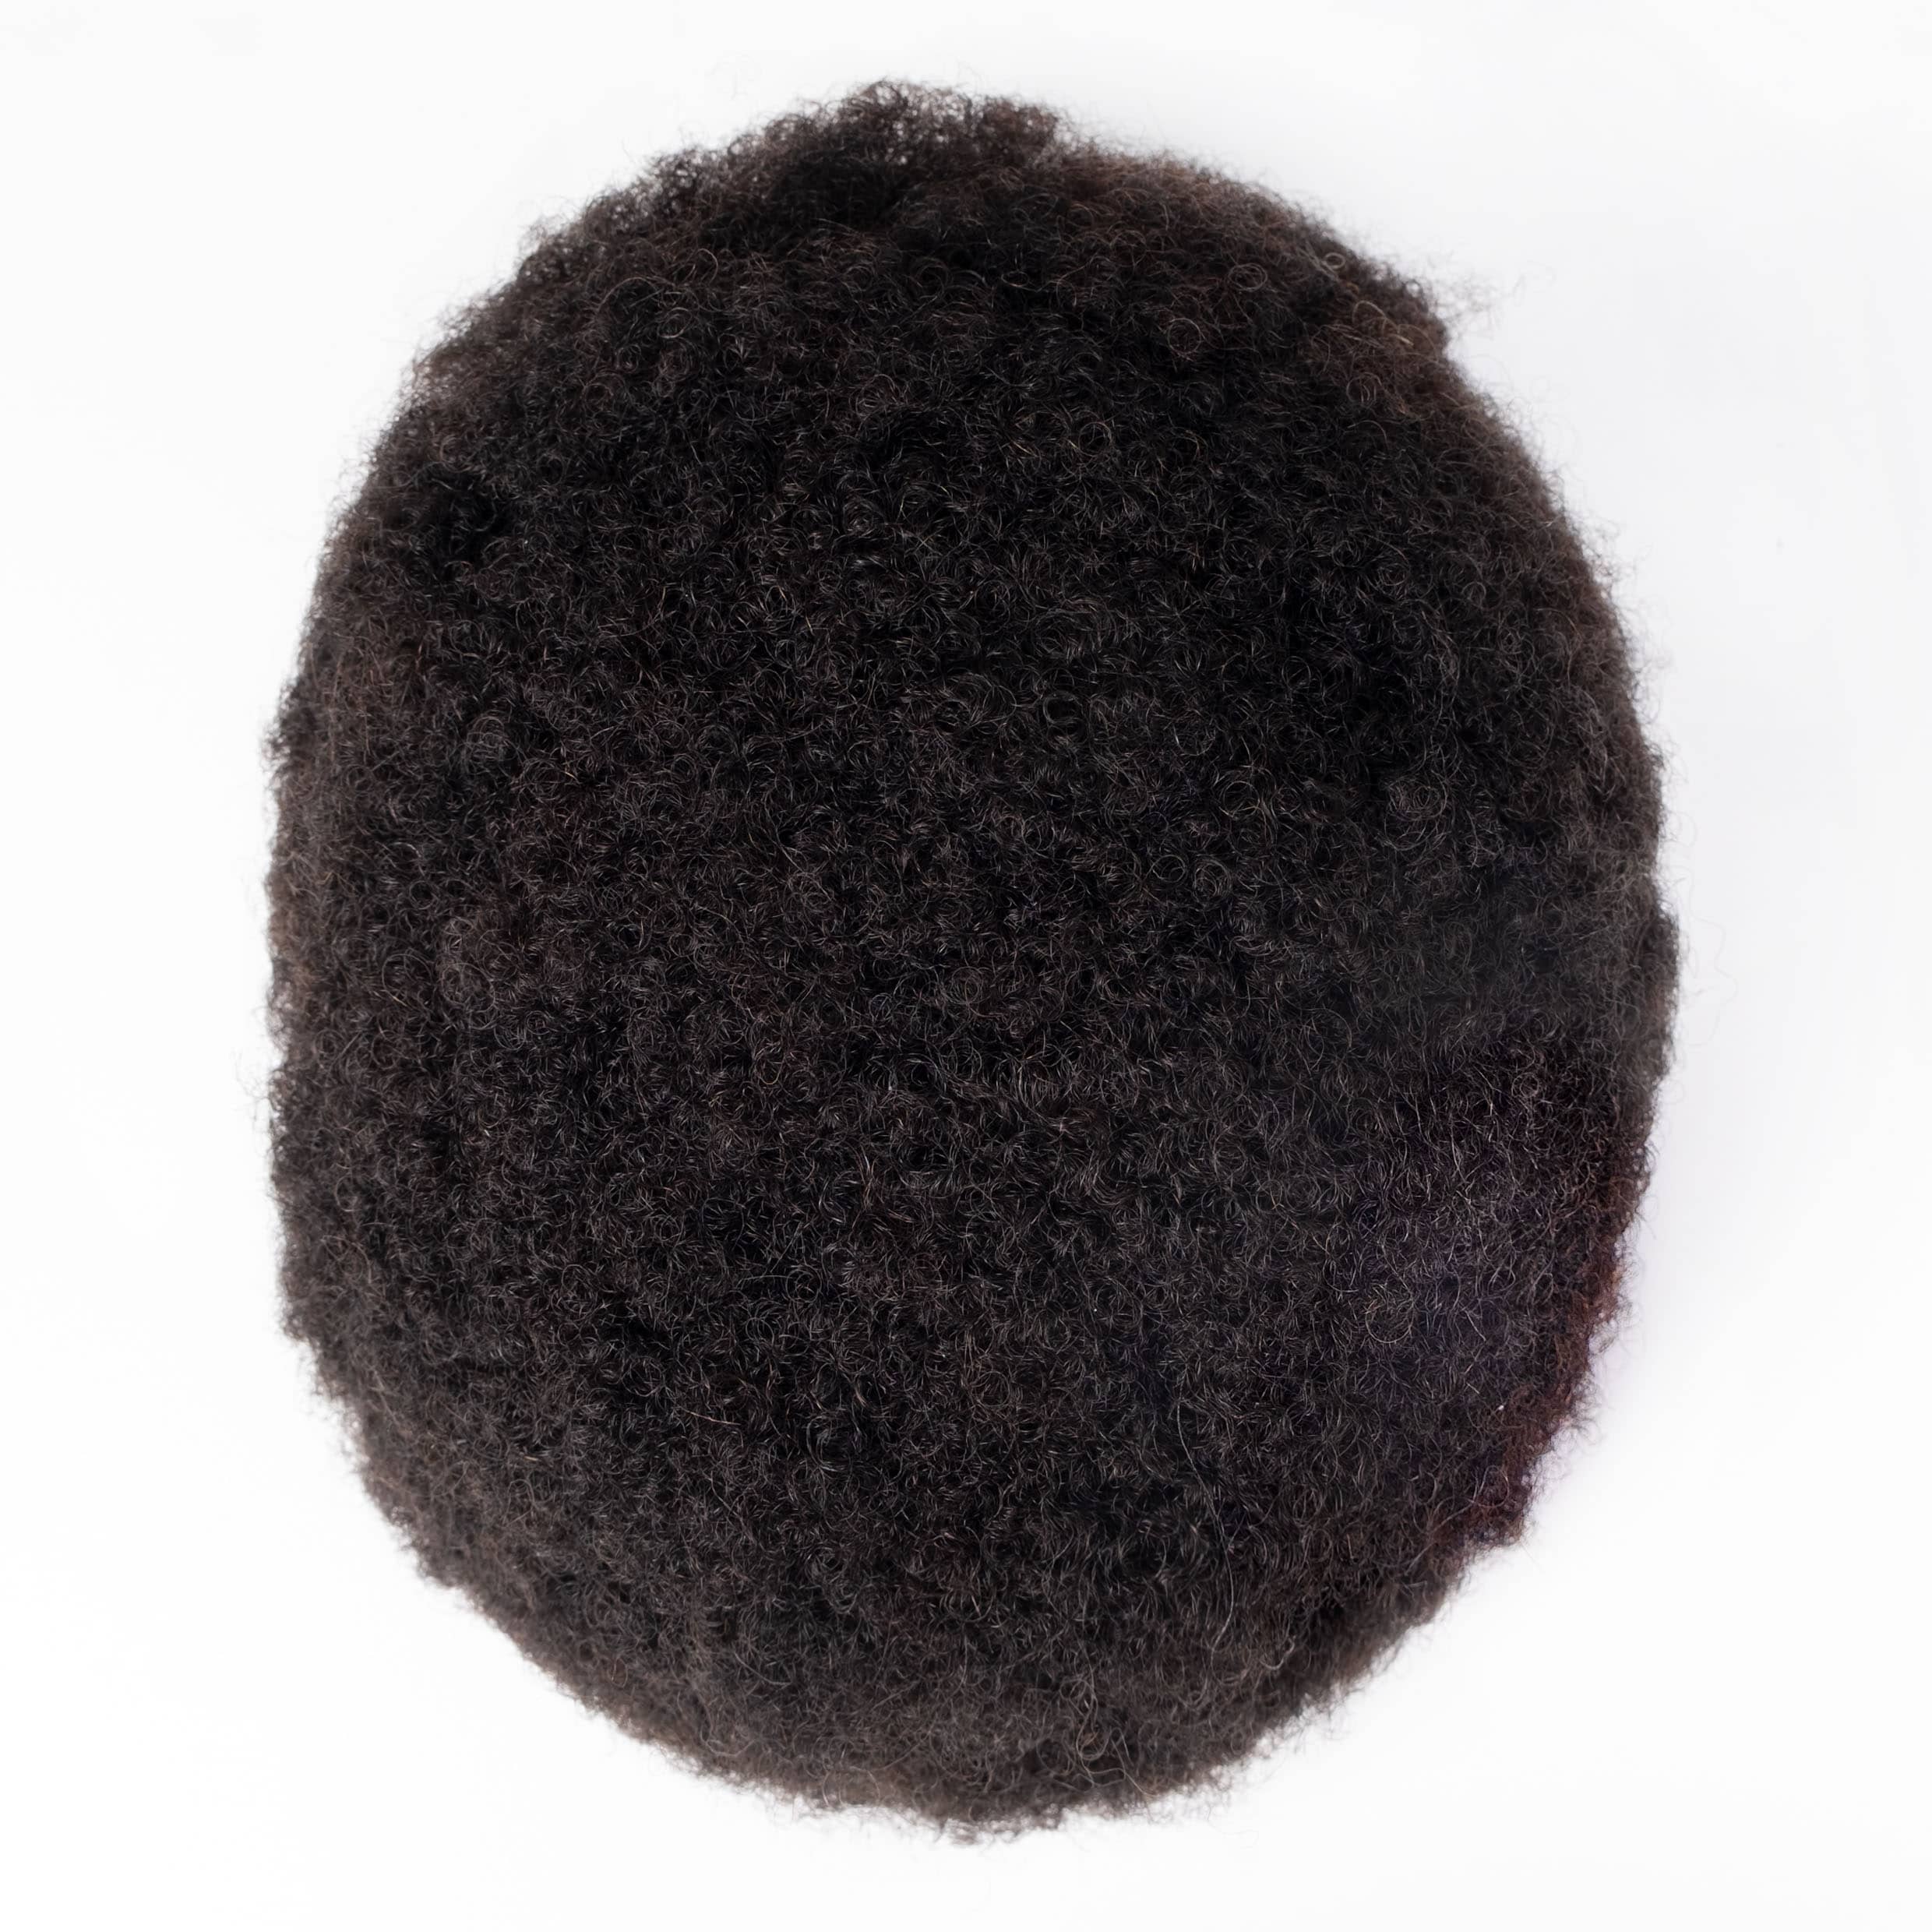 GEXWIGS African American Afro Herren Haarsystem Vollspitze 